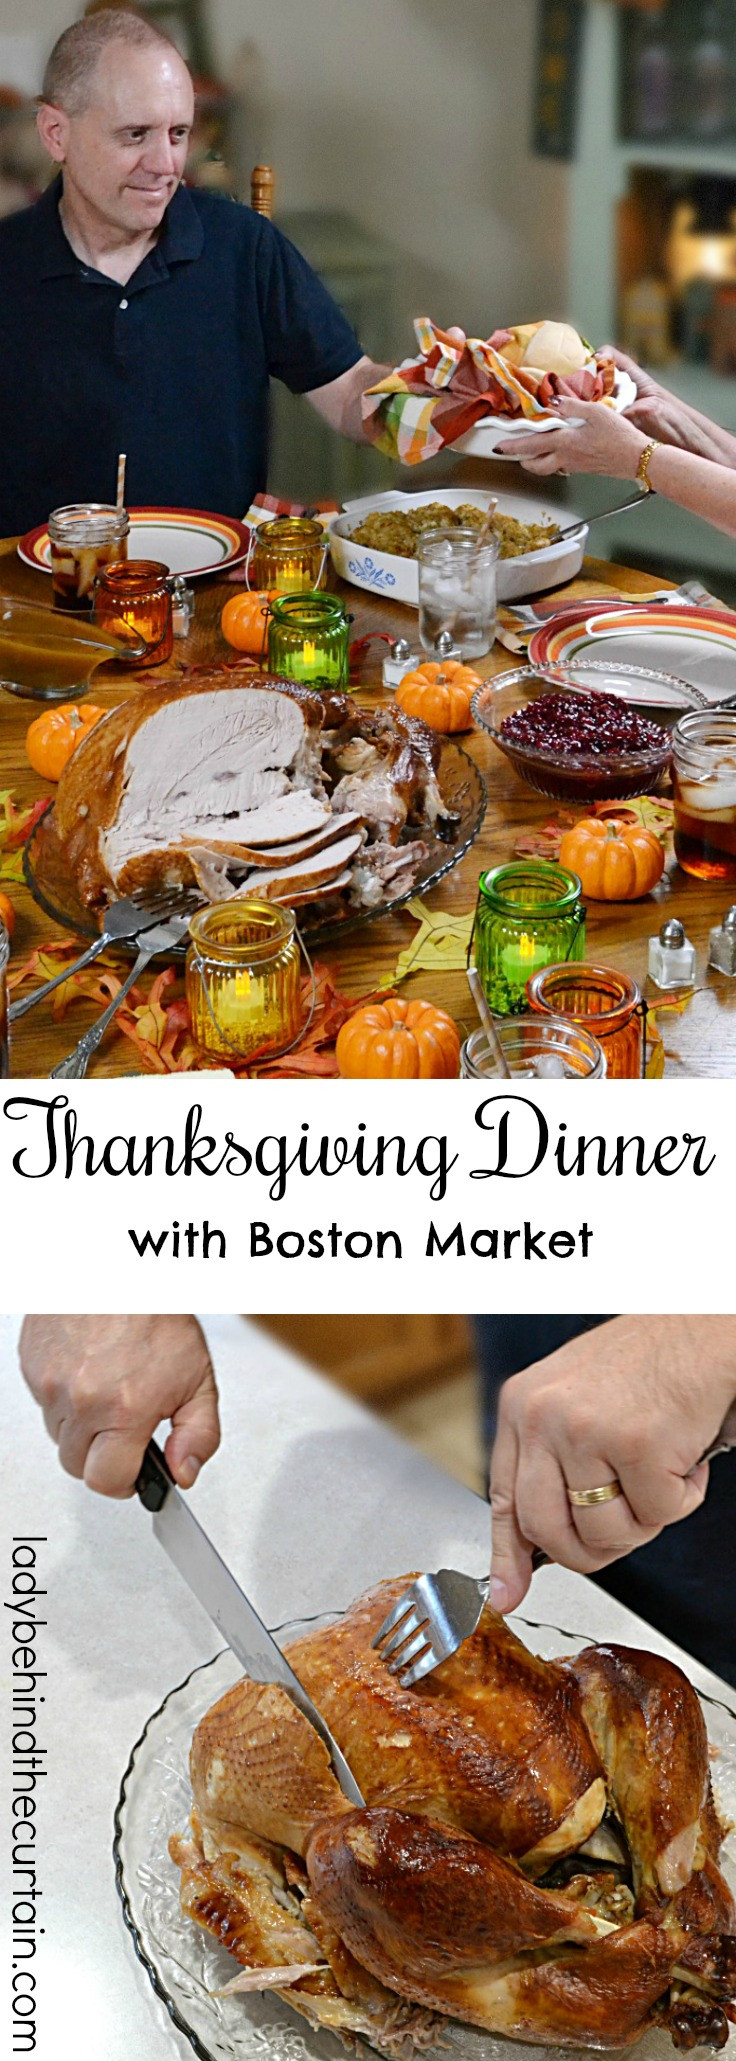 Boston Market Thanksgiving Dinner 2017
 Thanksgiving Dinner with Boston Market